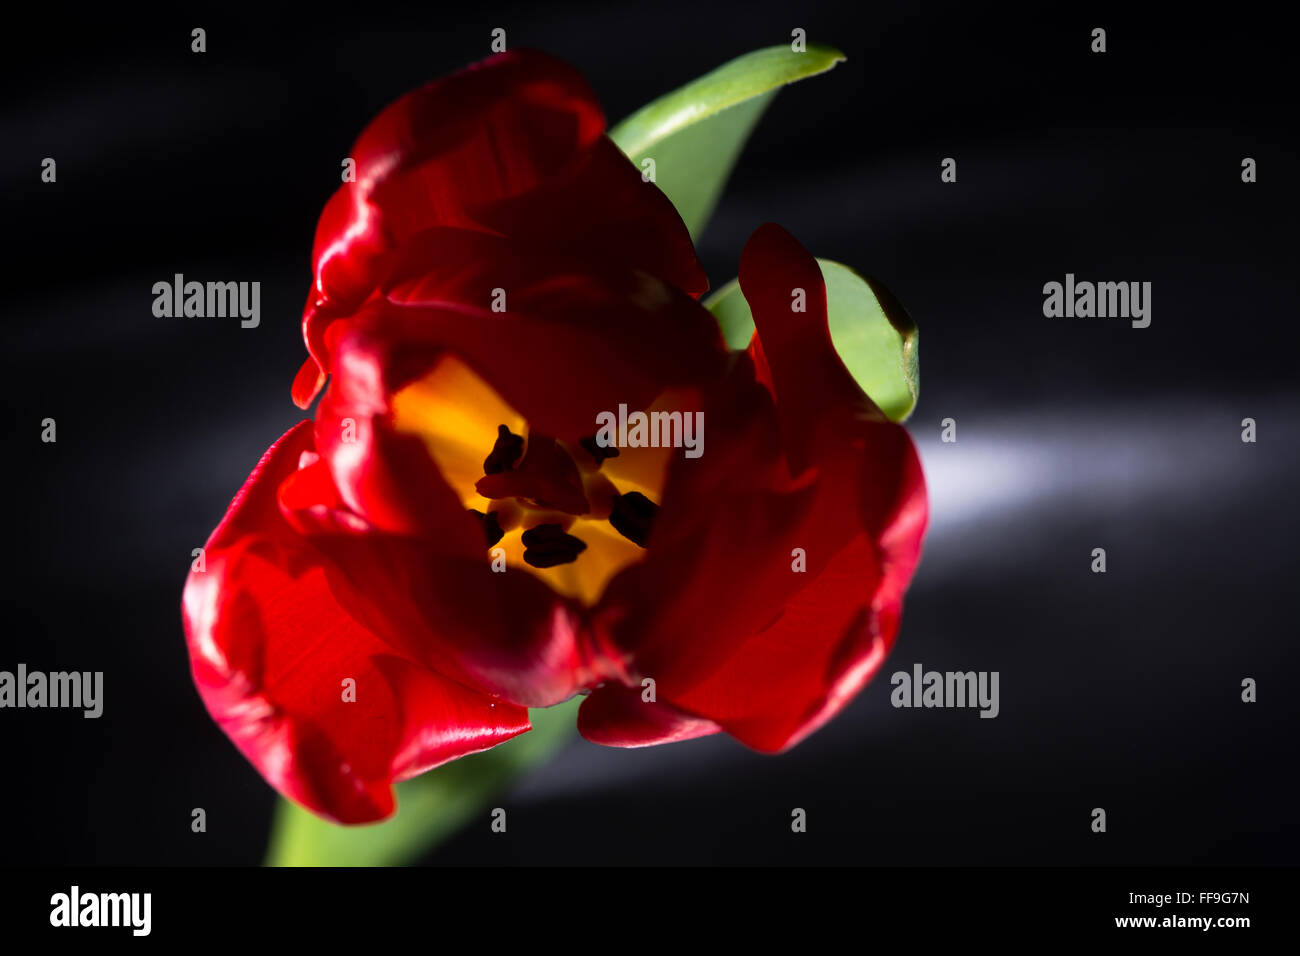 Red tulip fiore con retro illuminazione. Un unico fiore con focus su stami e petali al di fuori della messa a fuoco Foto Stock